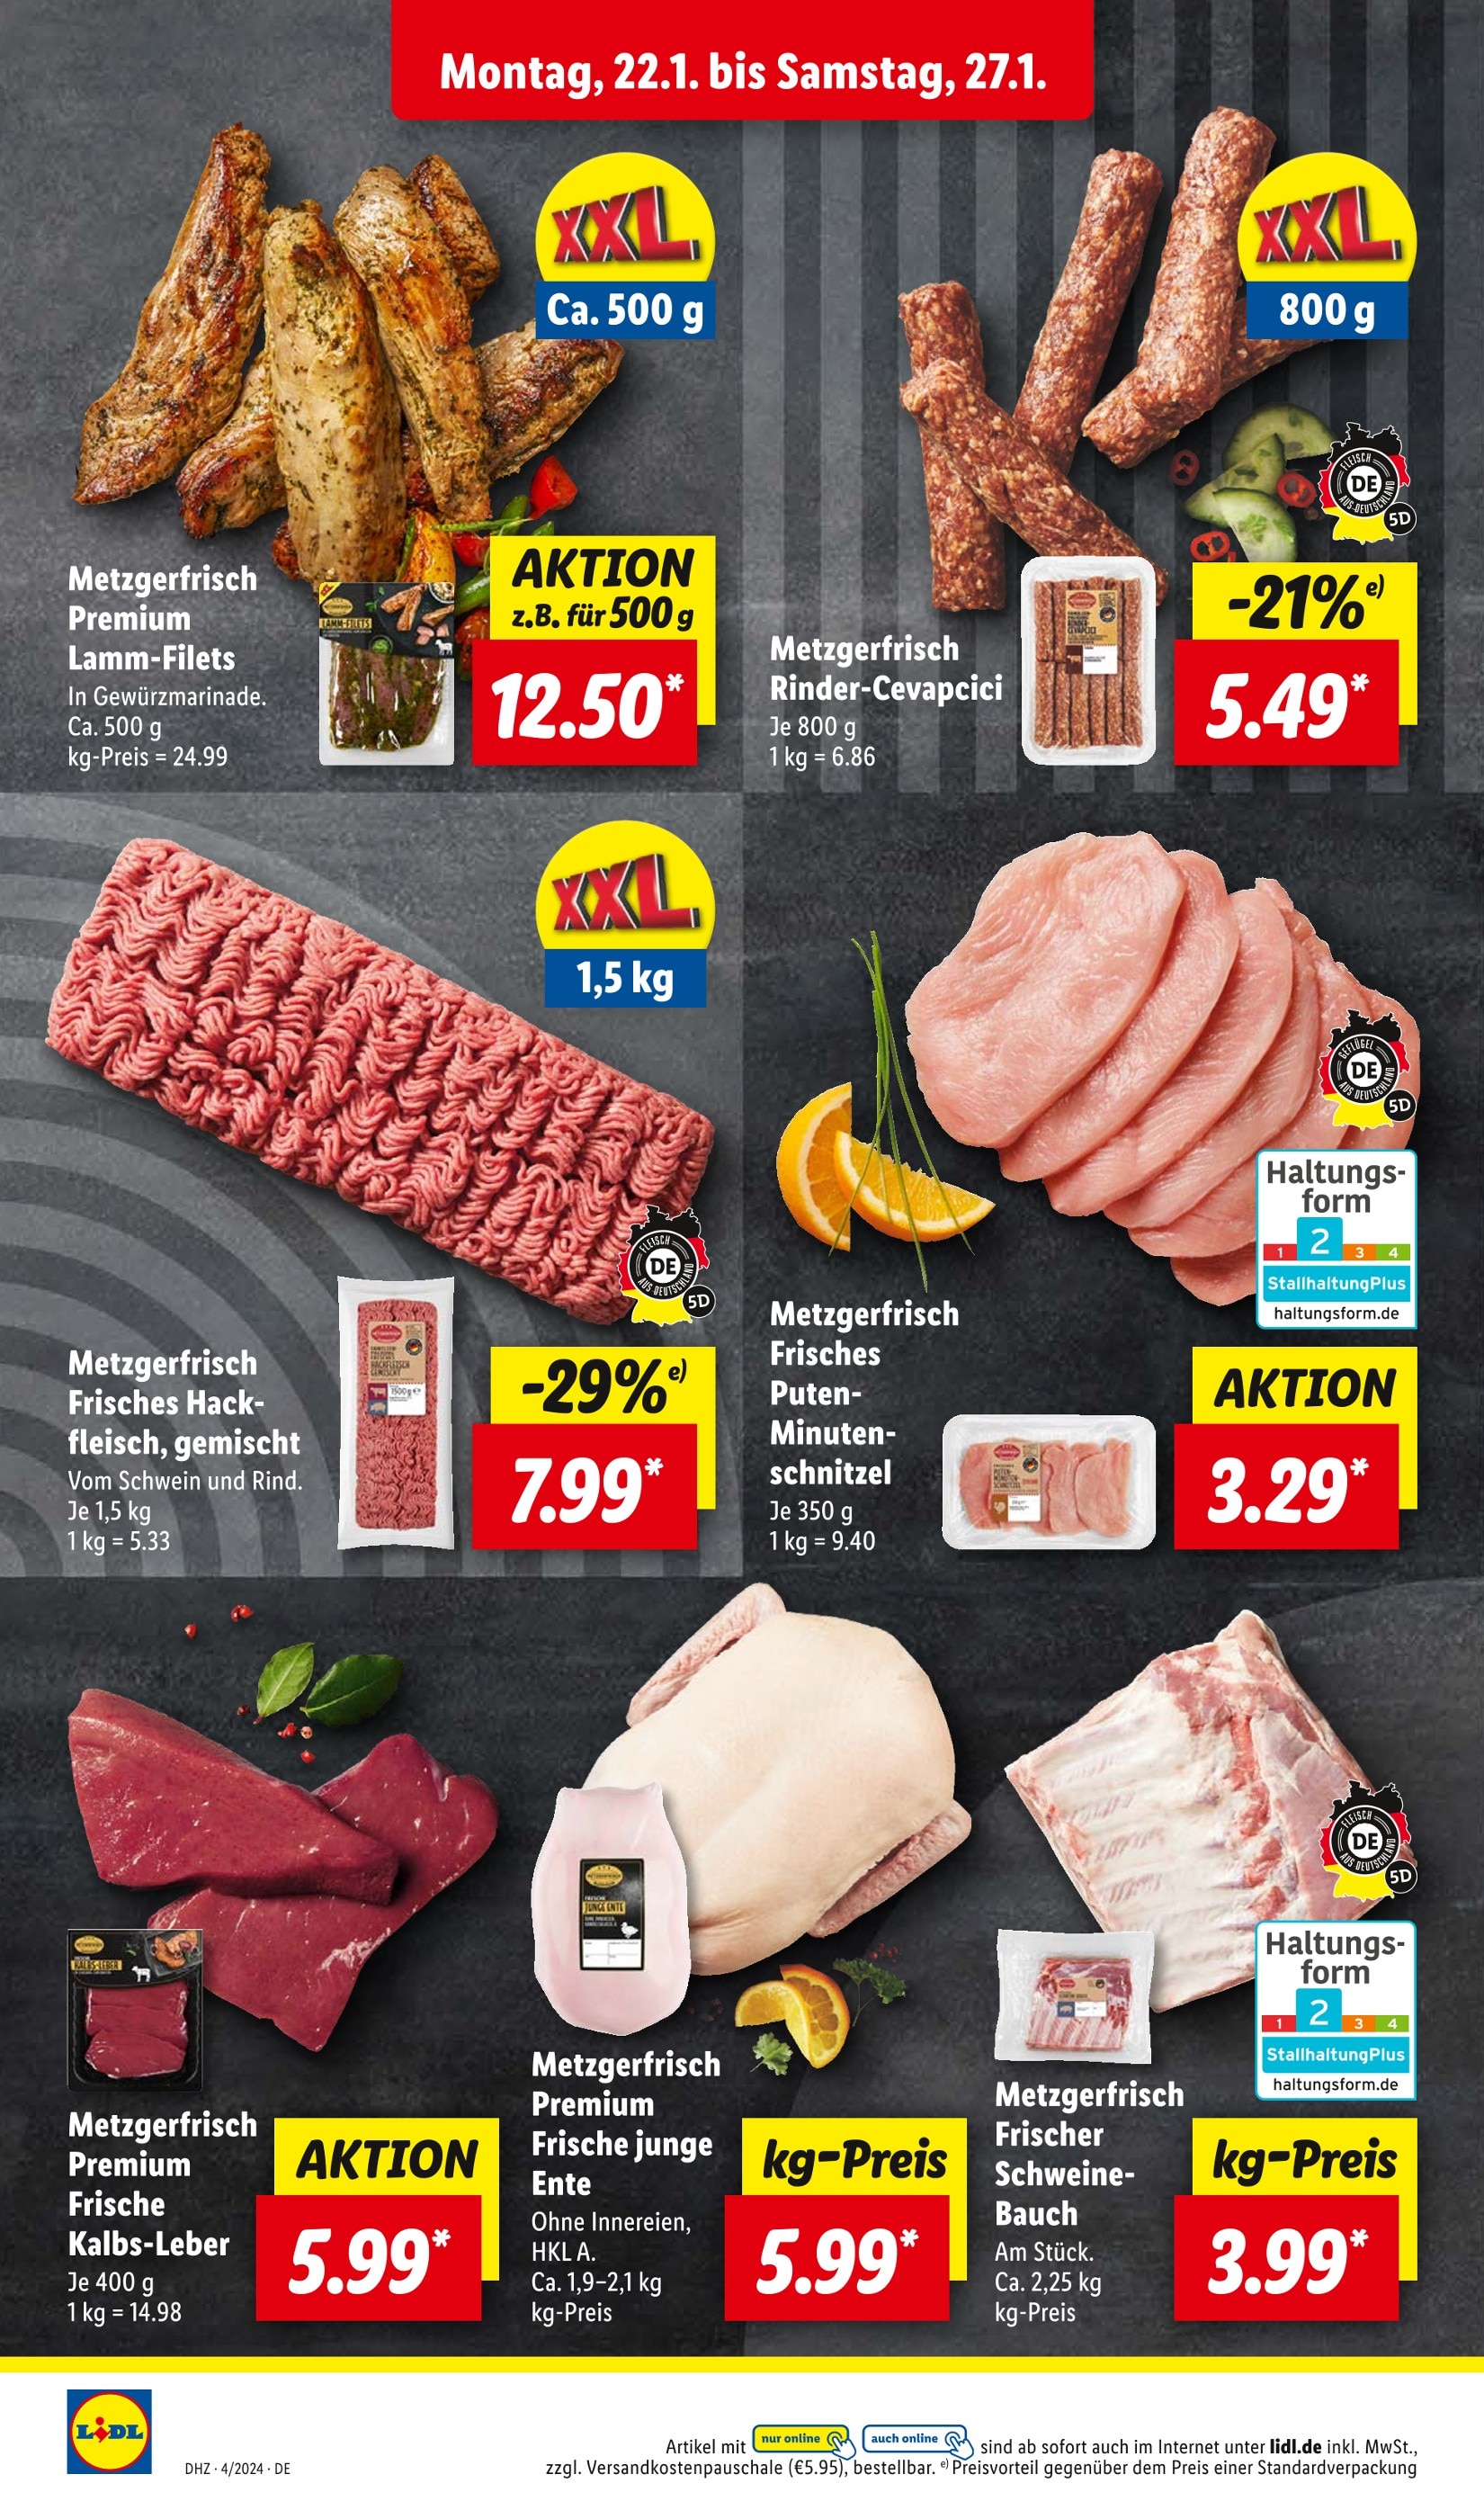 Görlitz kaufen günstige - Schweinebauch Angebote Görlitz in in